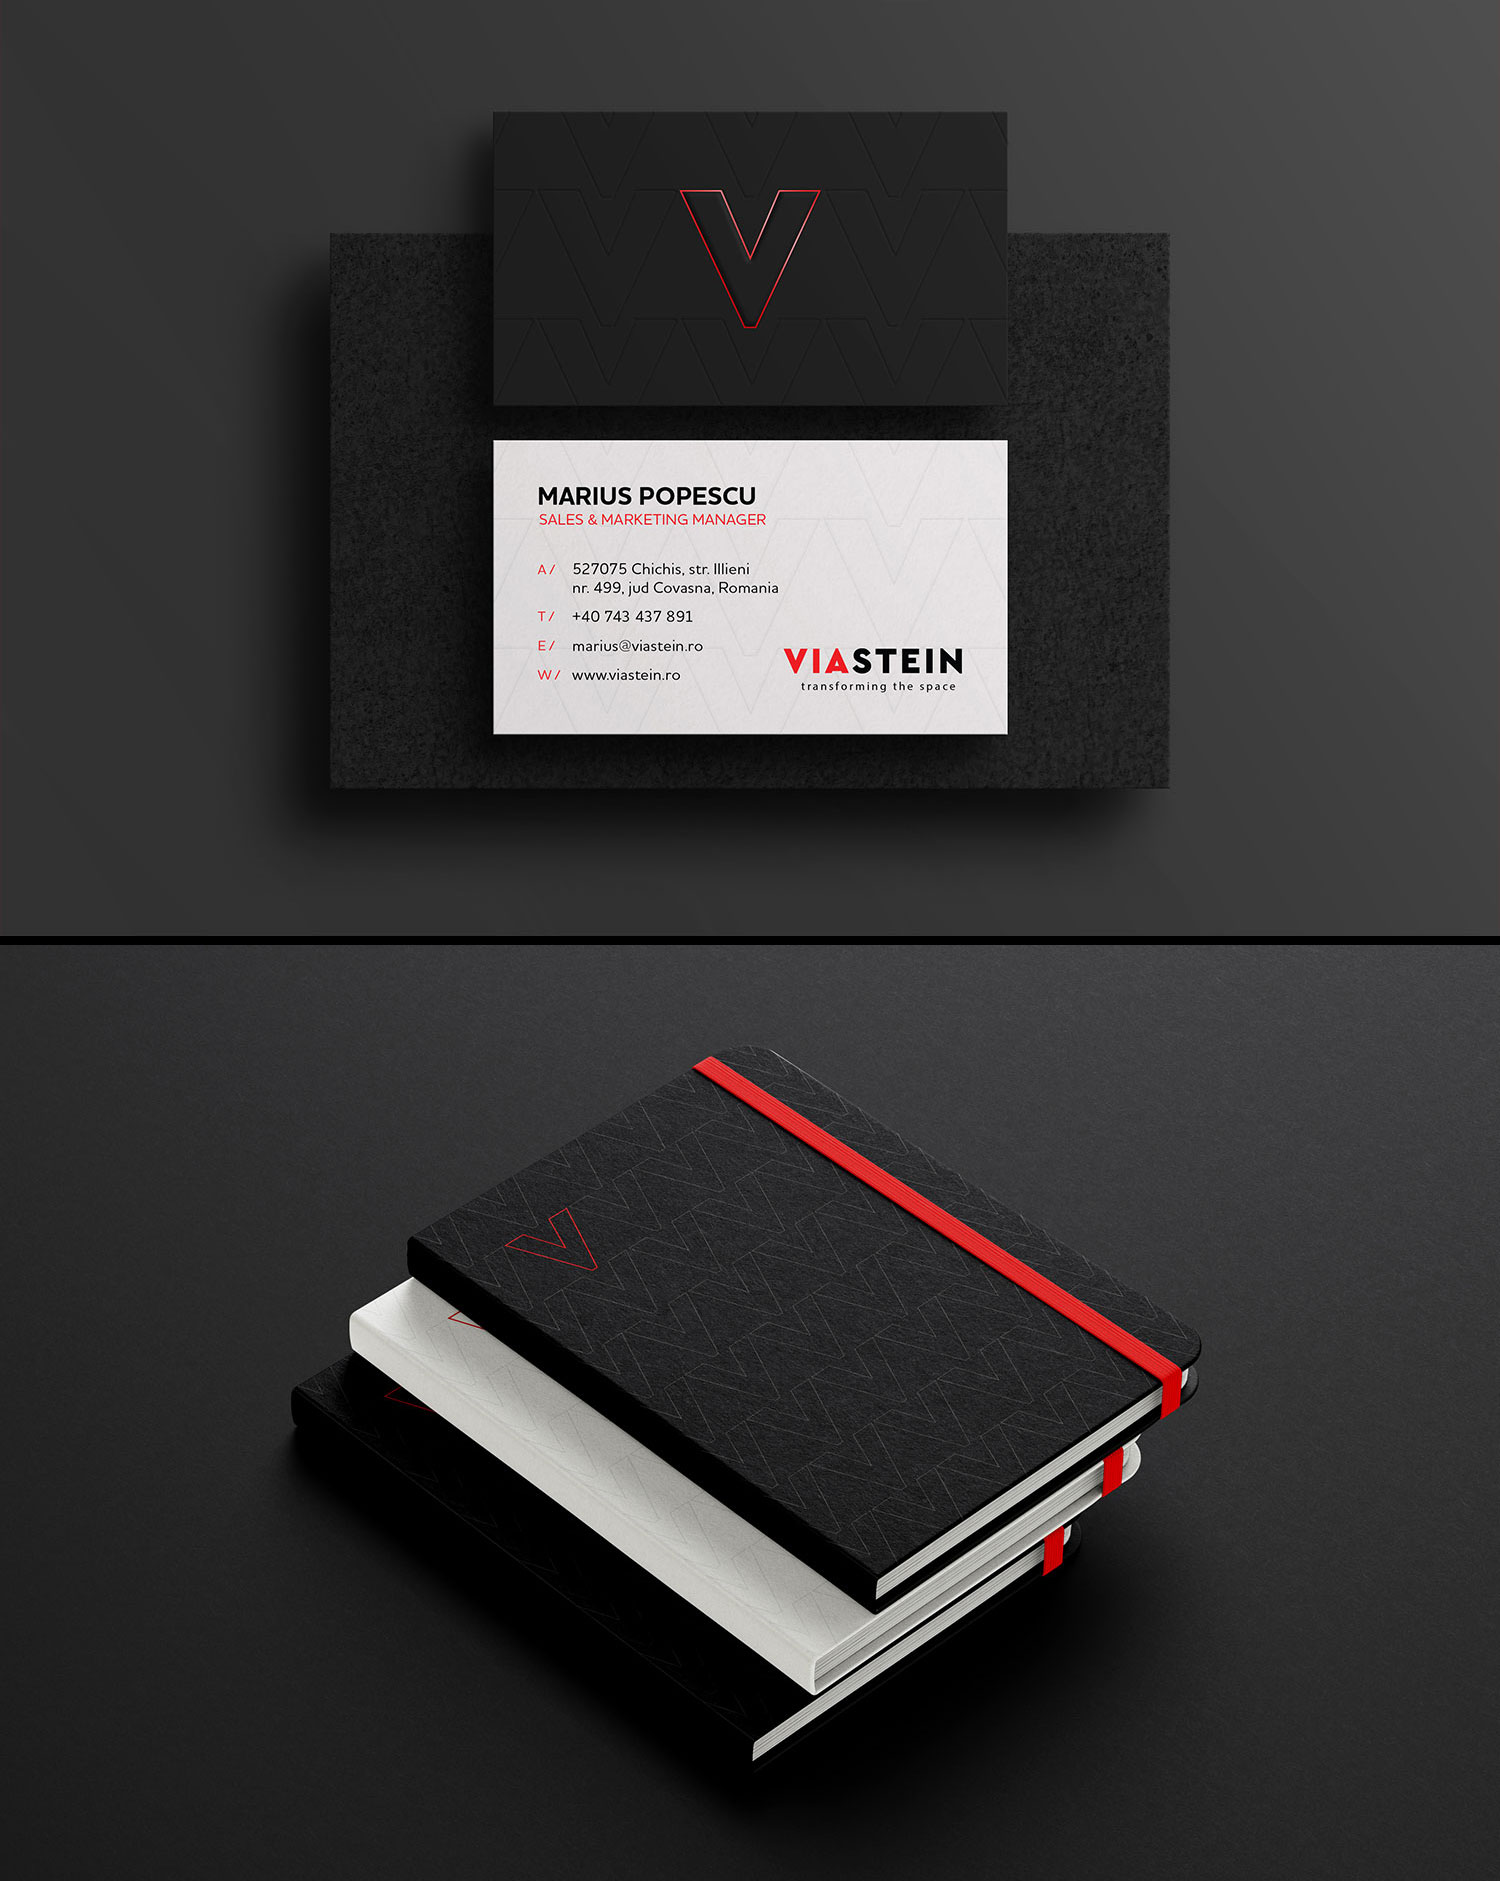 Viastein business card